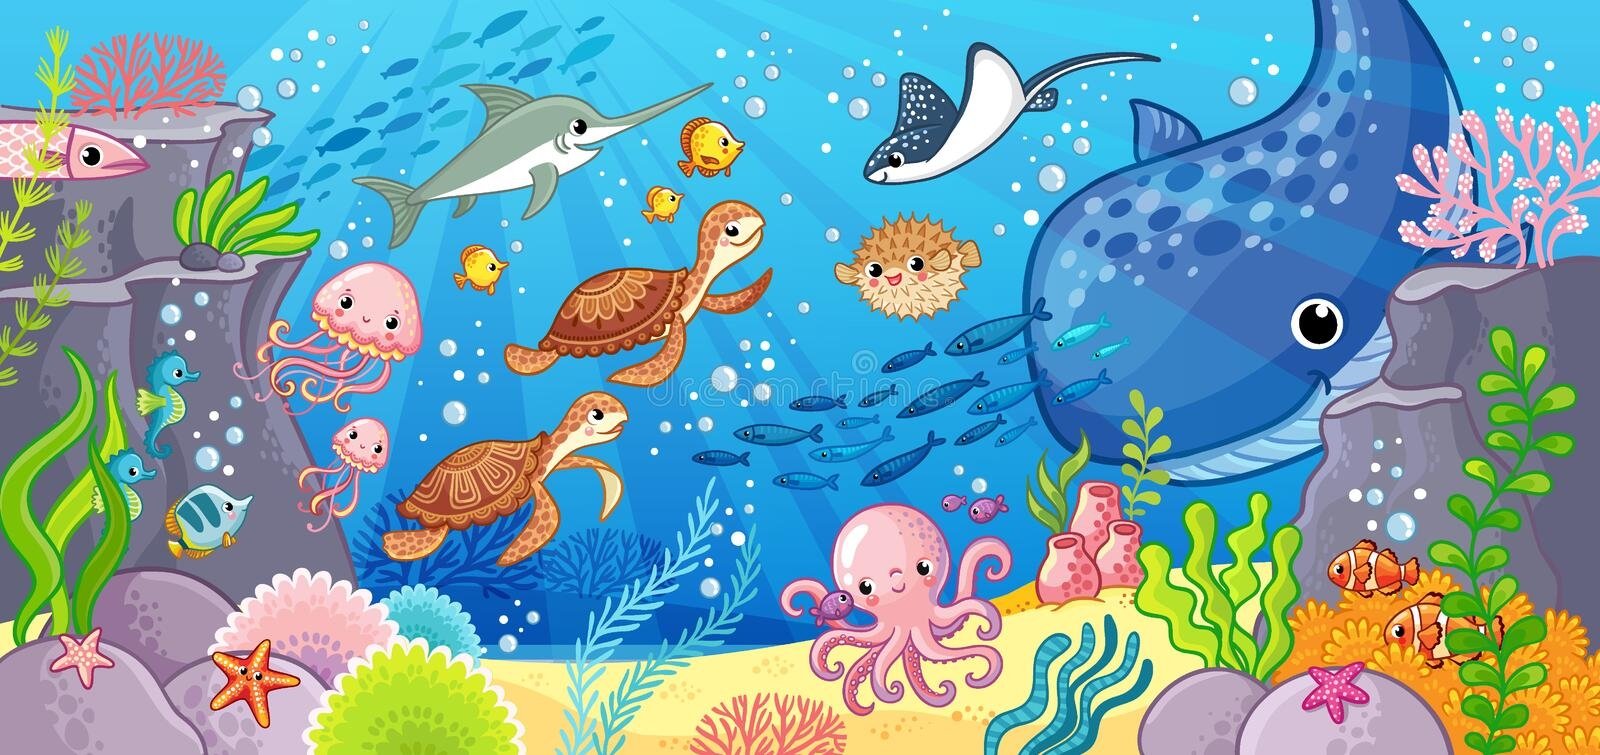 Подводный мир для дошкольников. Морские обитатели для детей. Подводные обитатели для детей. Морской мир иллюстрация. День водных животных в детском саду